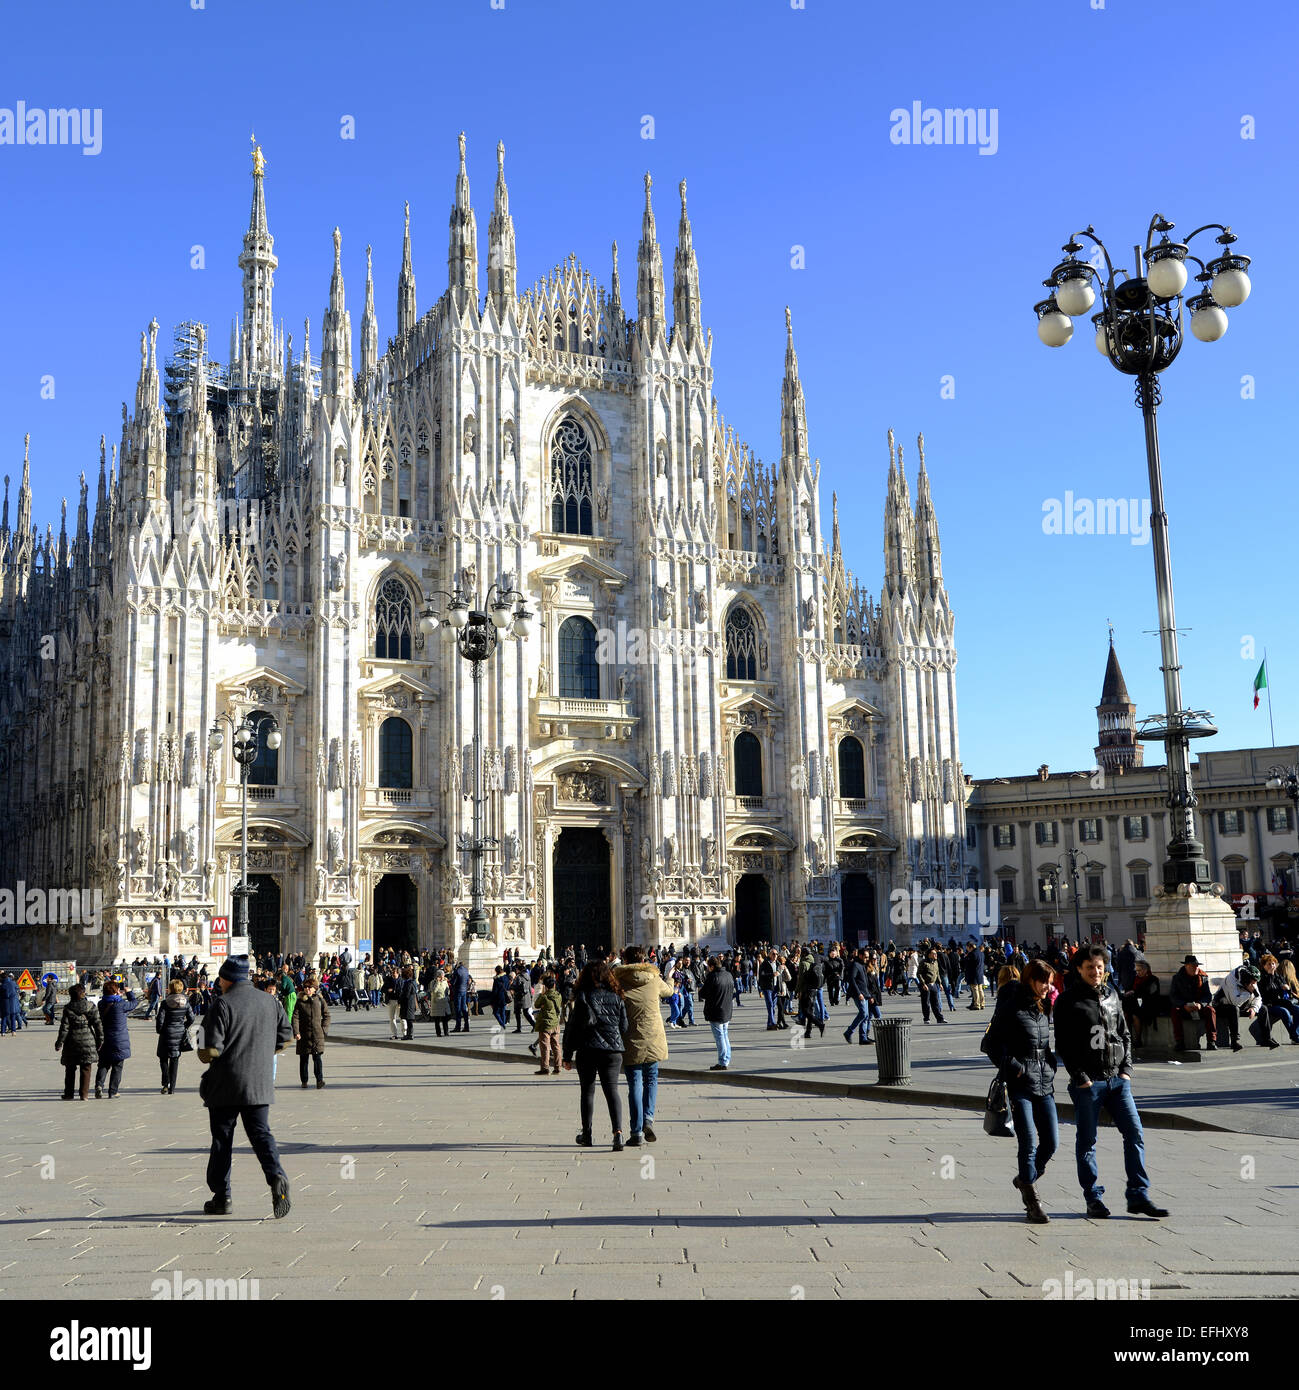 Cathédrale, la cathédrale de Milan, Il Duomo, la cathédrale de Milan, Italie Banque D'Images